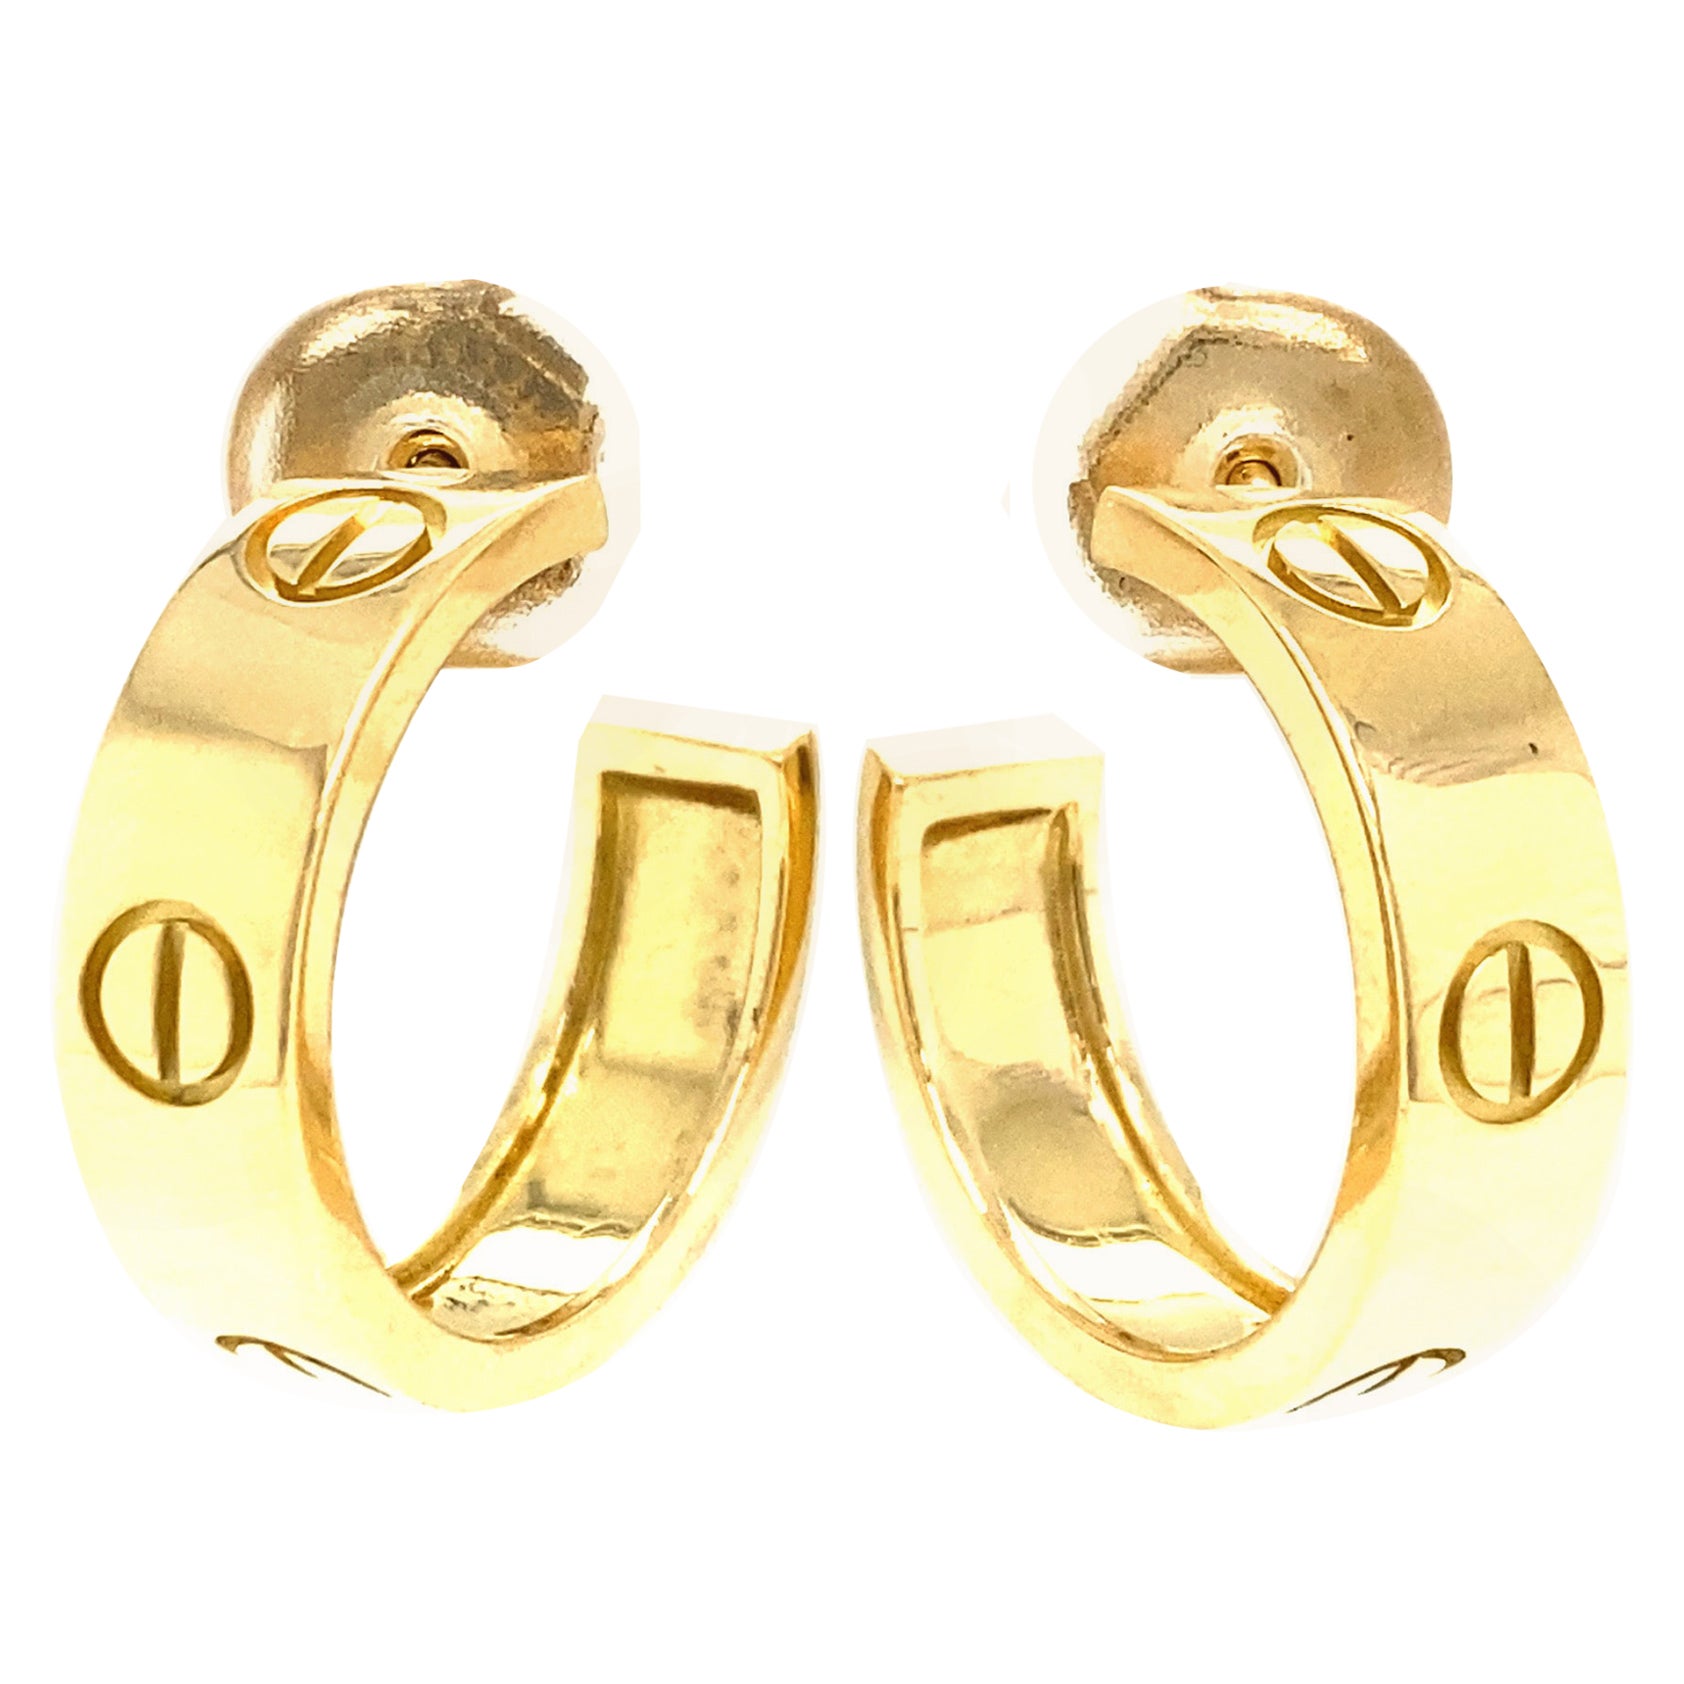 Cartier 18k Love Hoop Earrings Yellow Gold